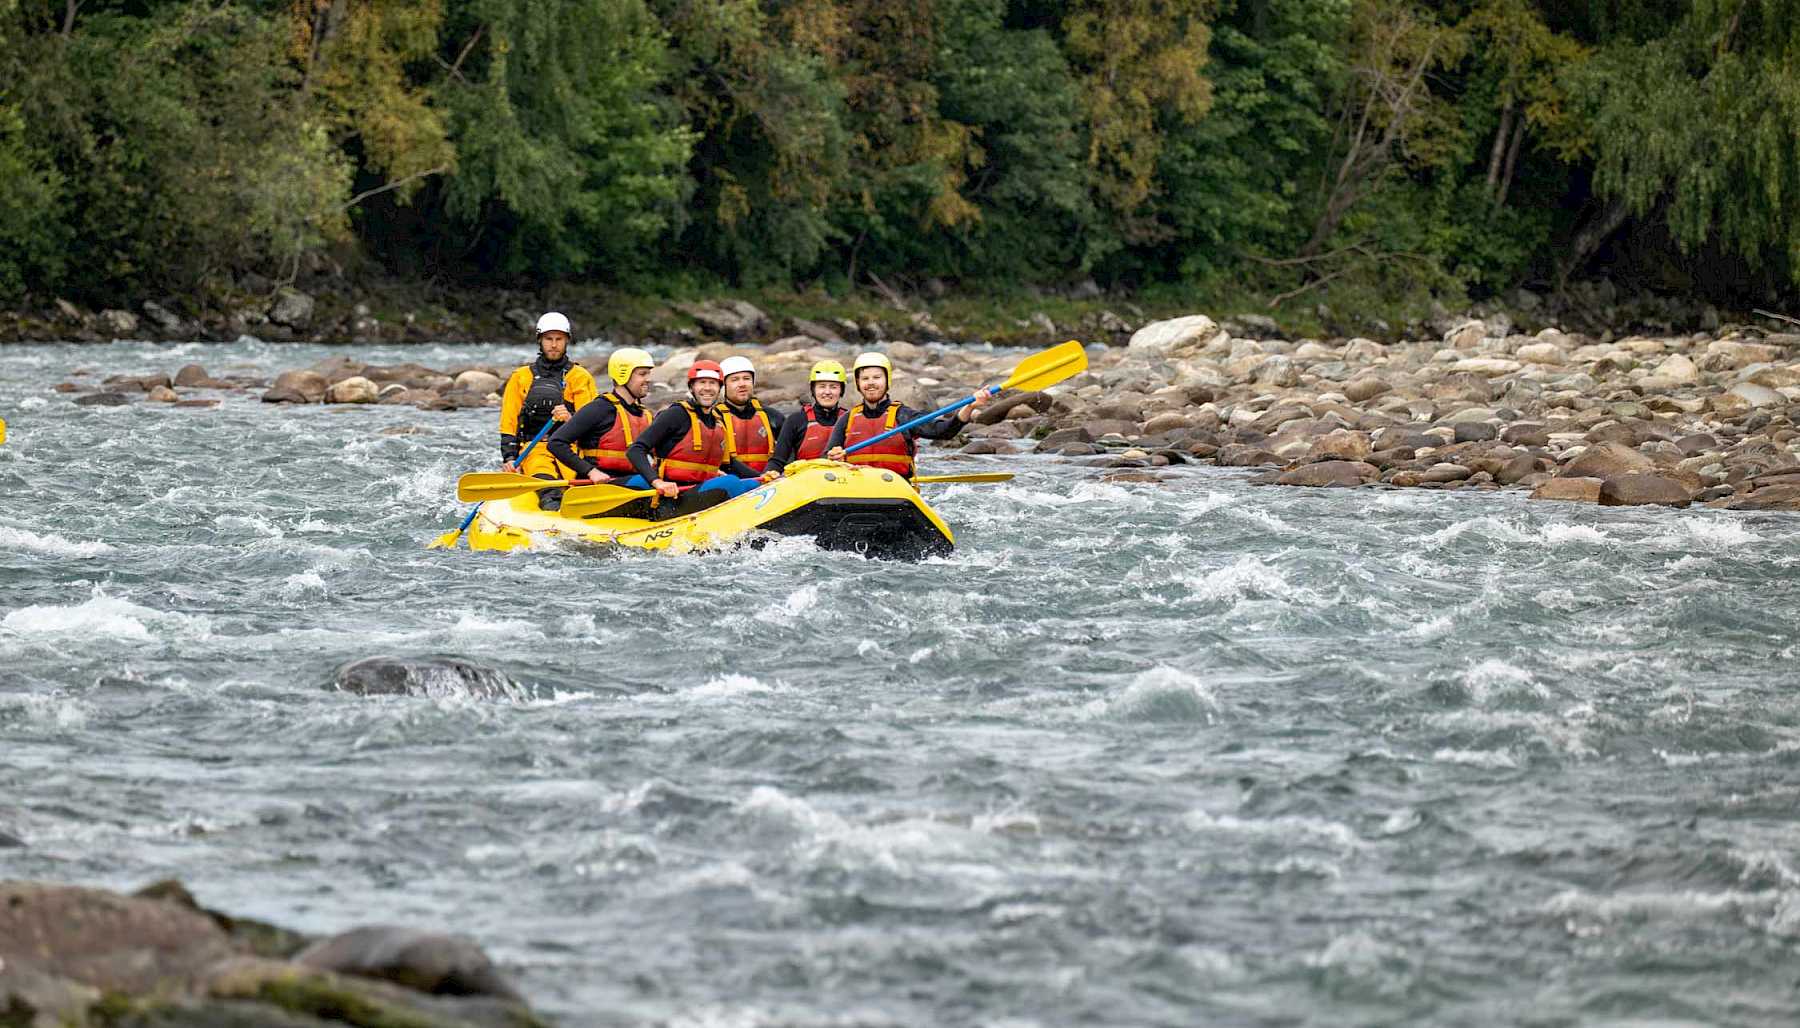 En gul raftingbåt med mange passasjerer rafter nedover en brusete elv